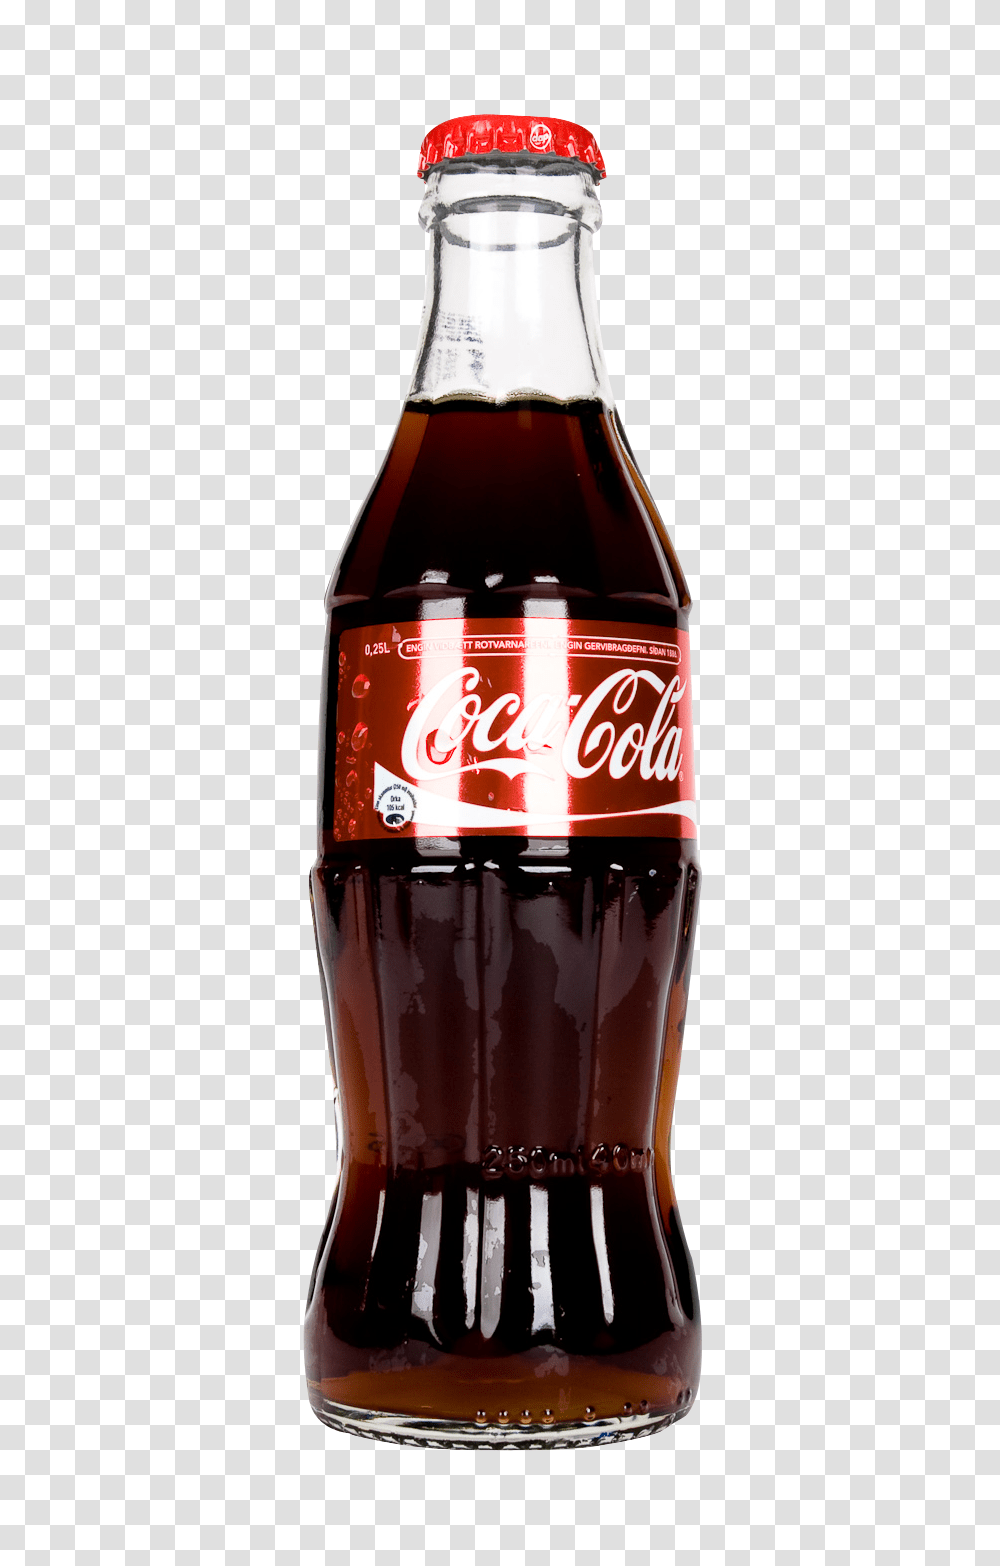 Coca Cola Bottle Image, Drink, Coke, Beverage, Soda Transparent Png